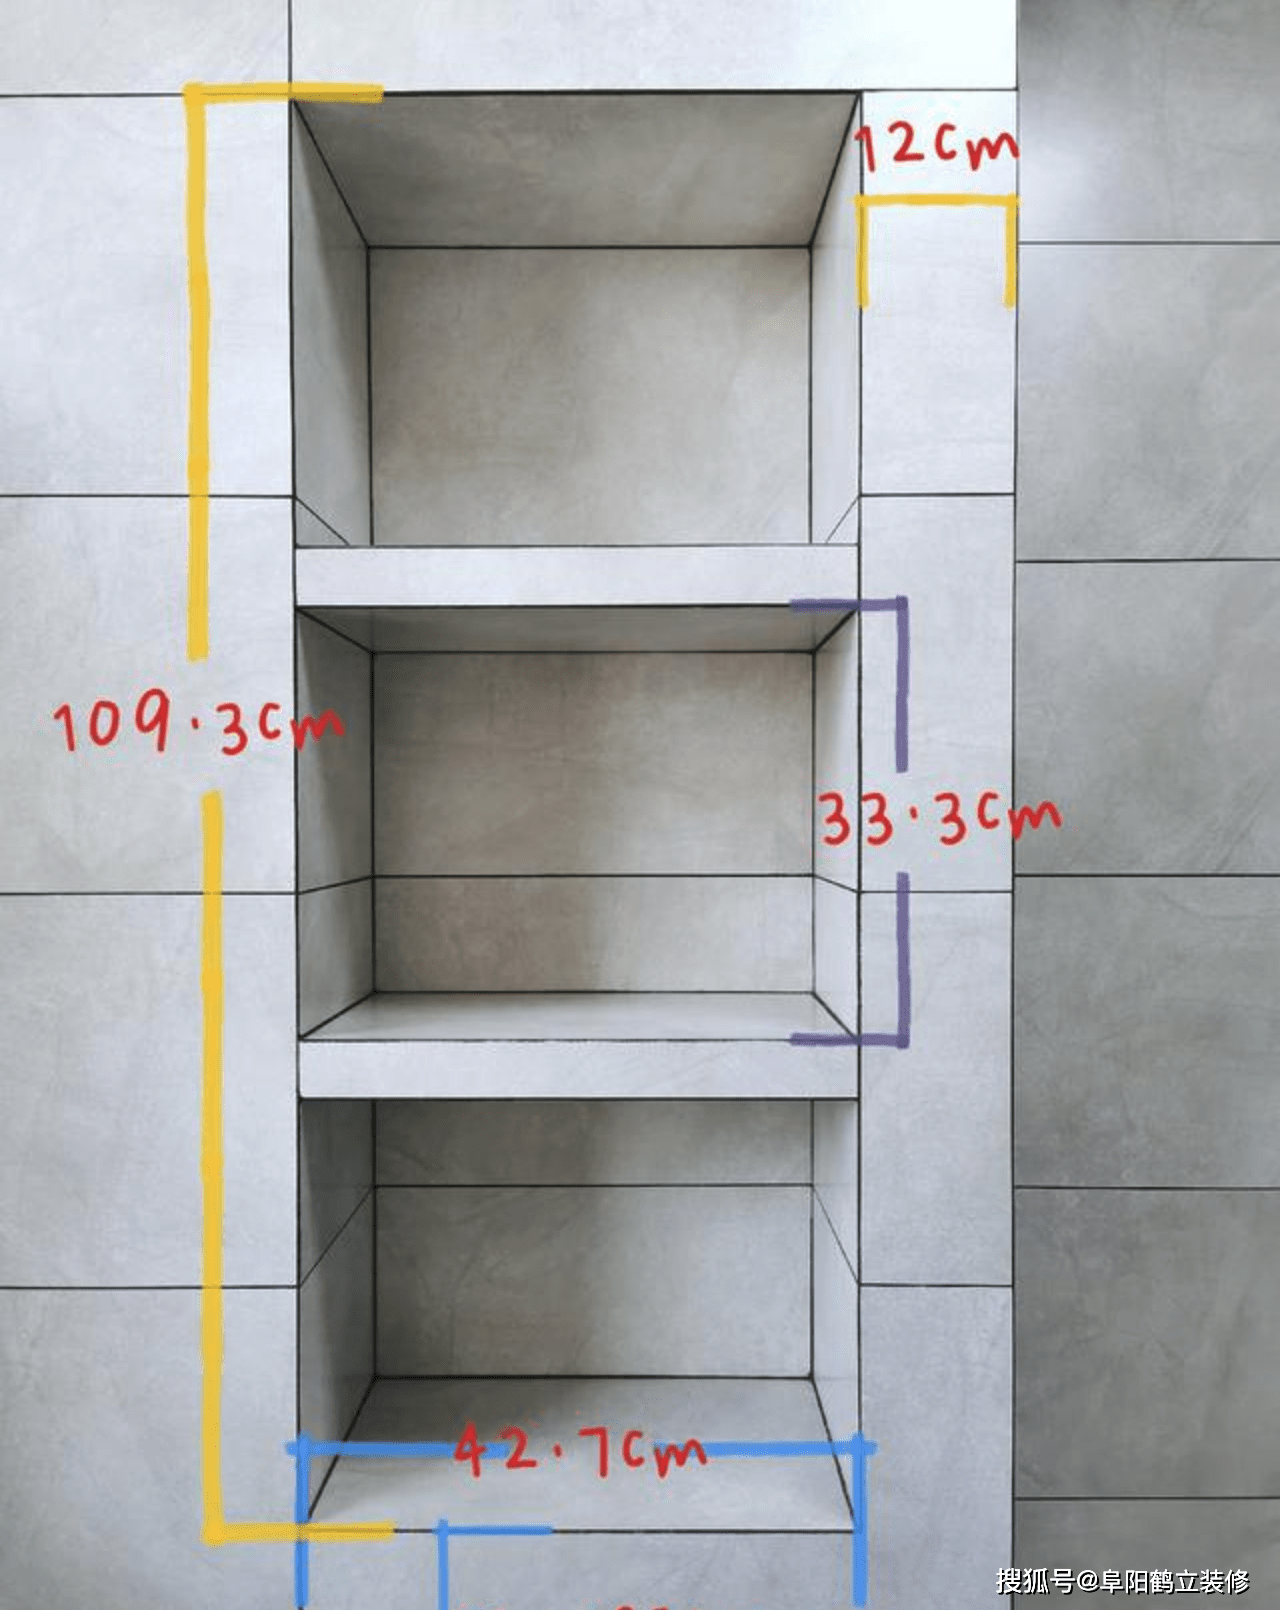 阜阳卫生间装修壁龛尺寸多少合适?